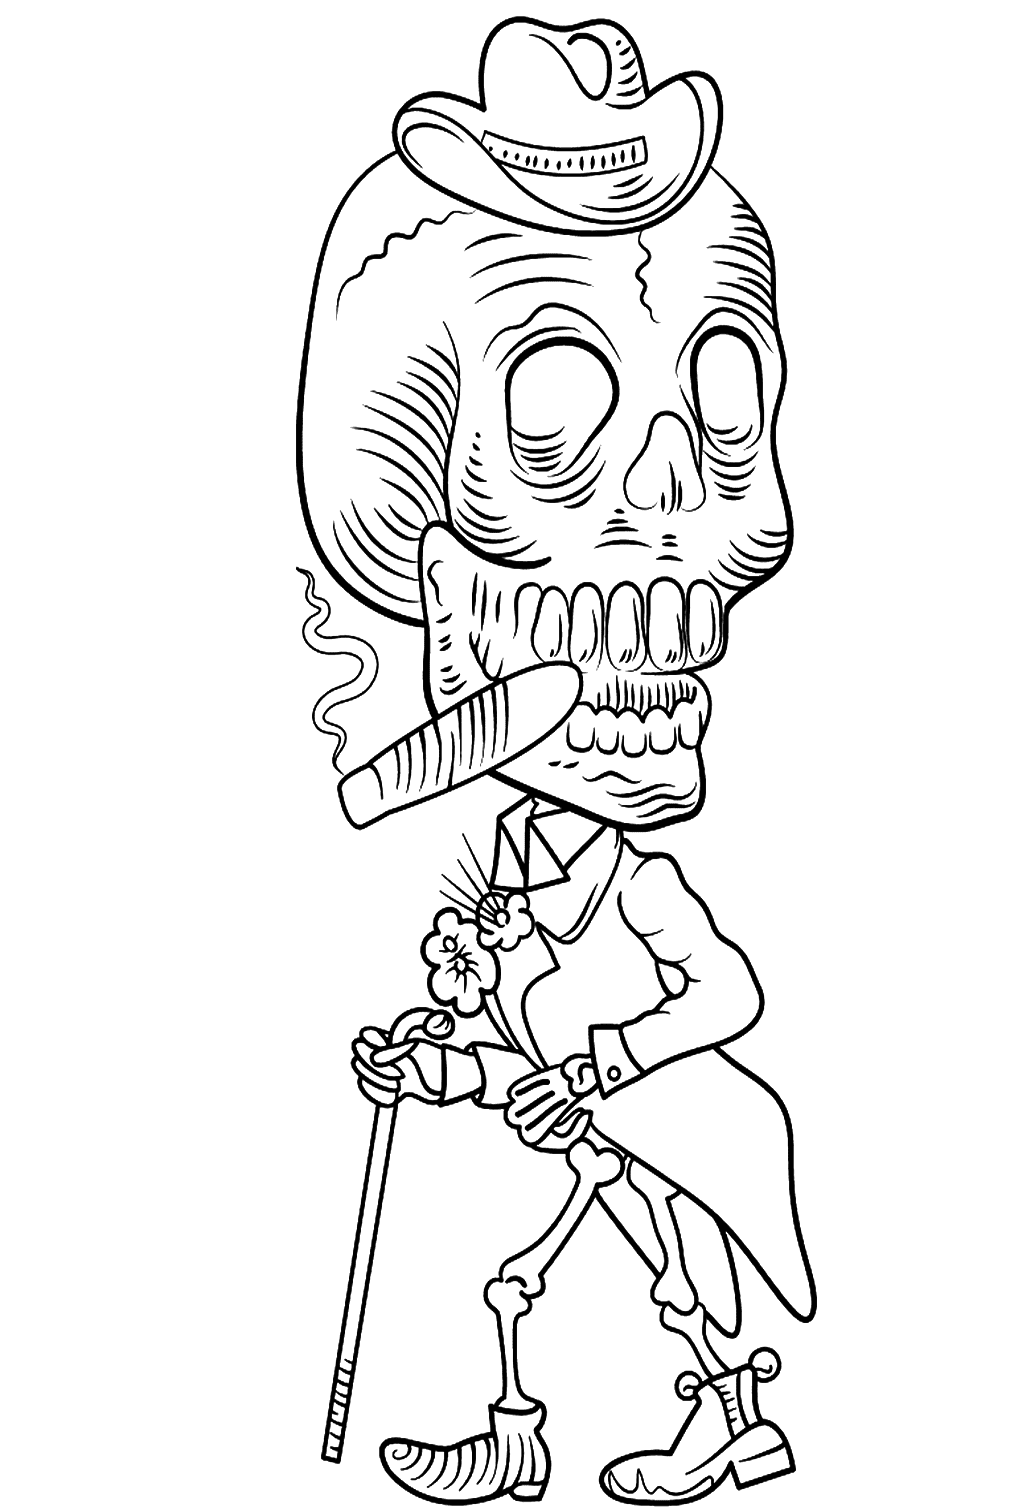 Esqueleto del Día de los Muertos del Día de los Muertos